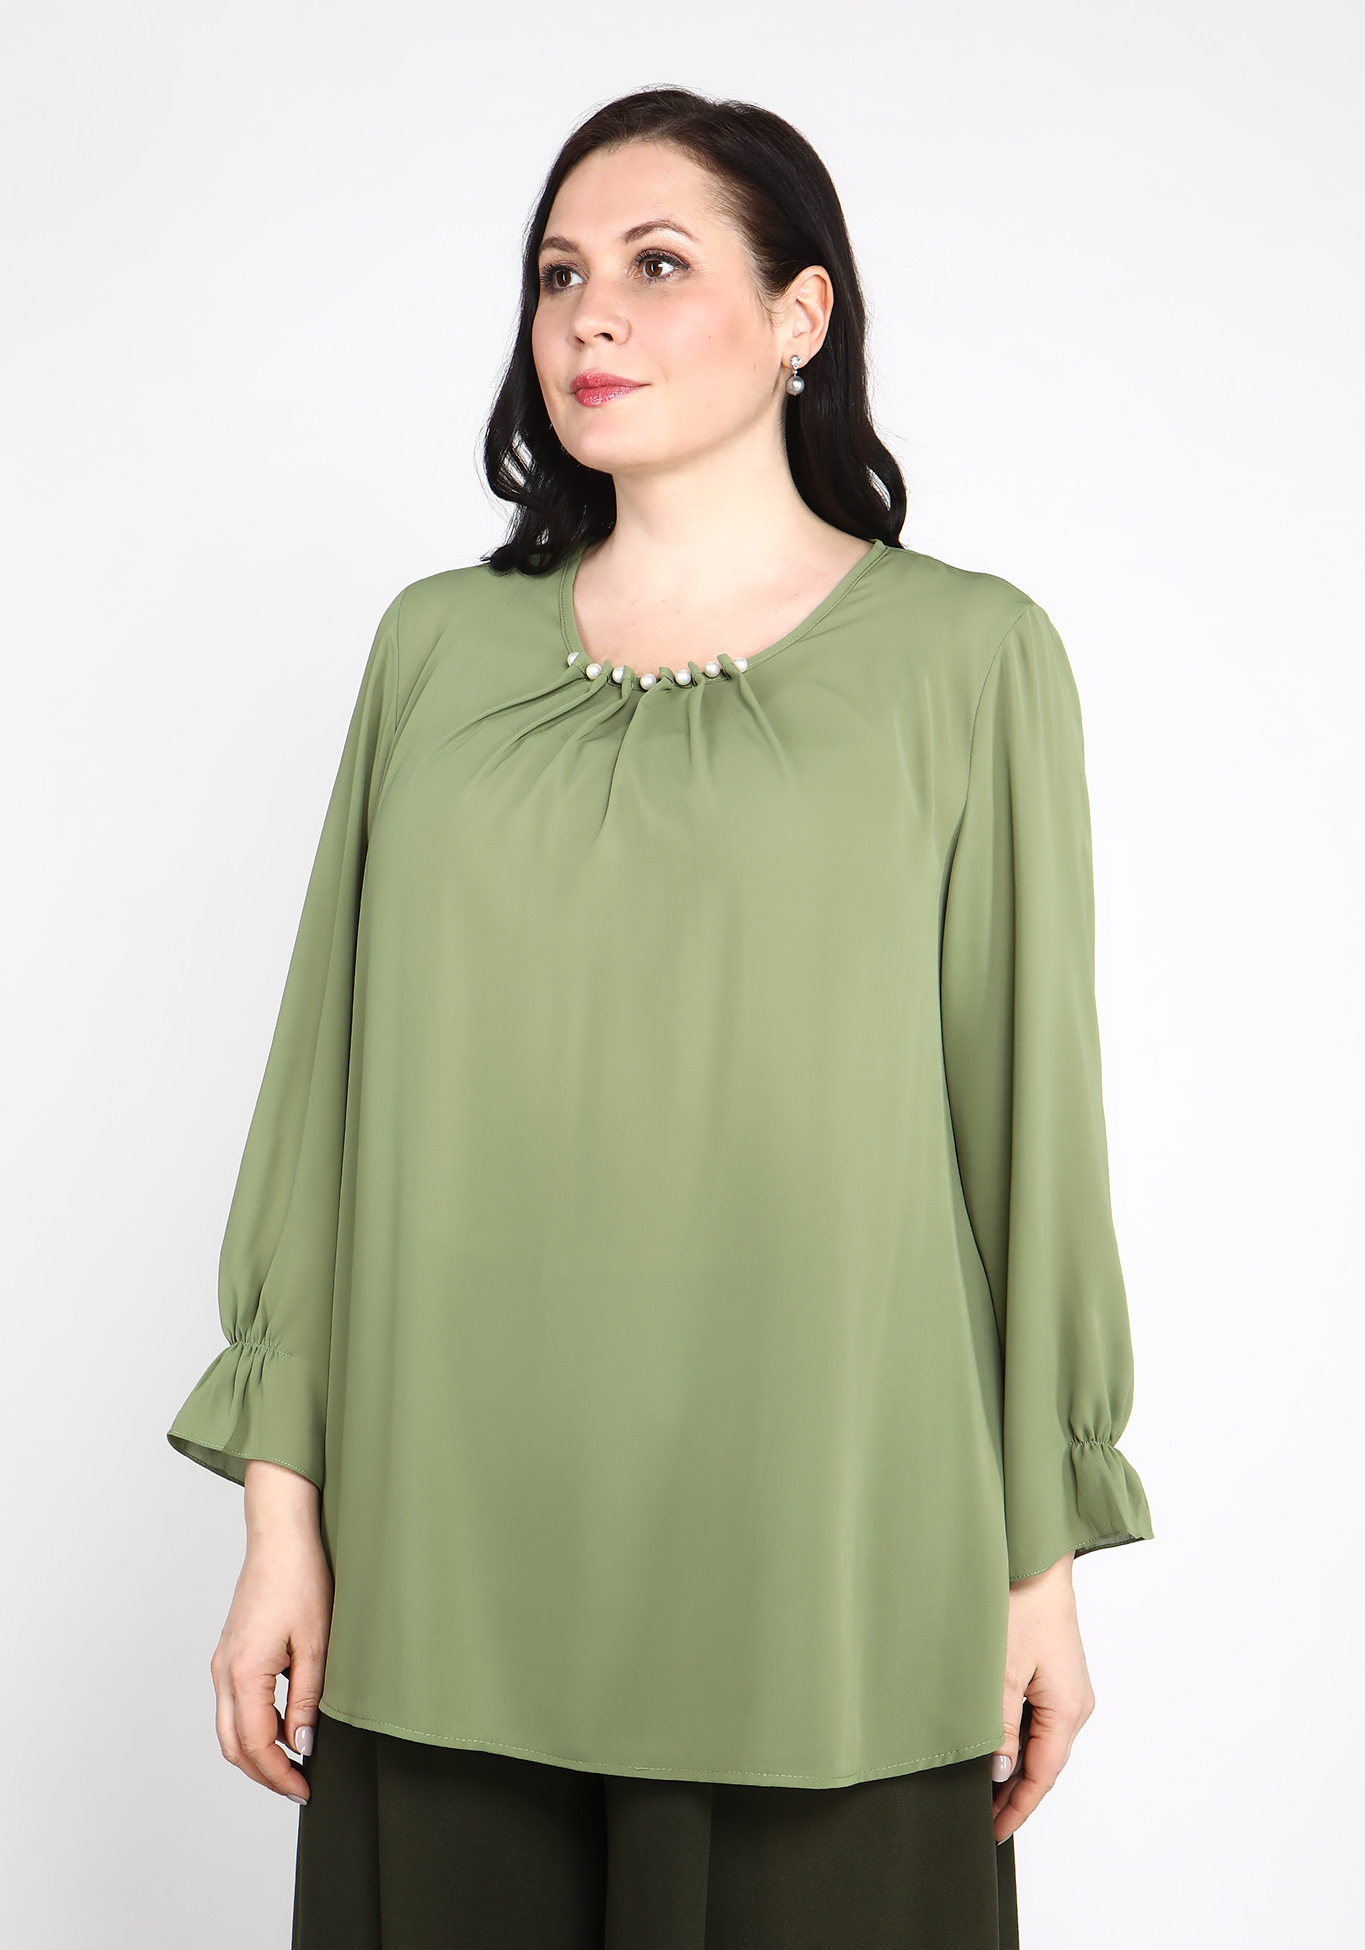 Блуза с украшением на воротнике Bianka Modeno, размер 50, цвет баклажановый - фото 9